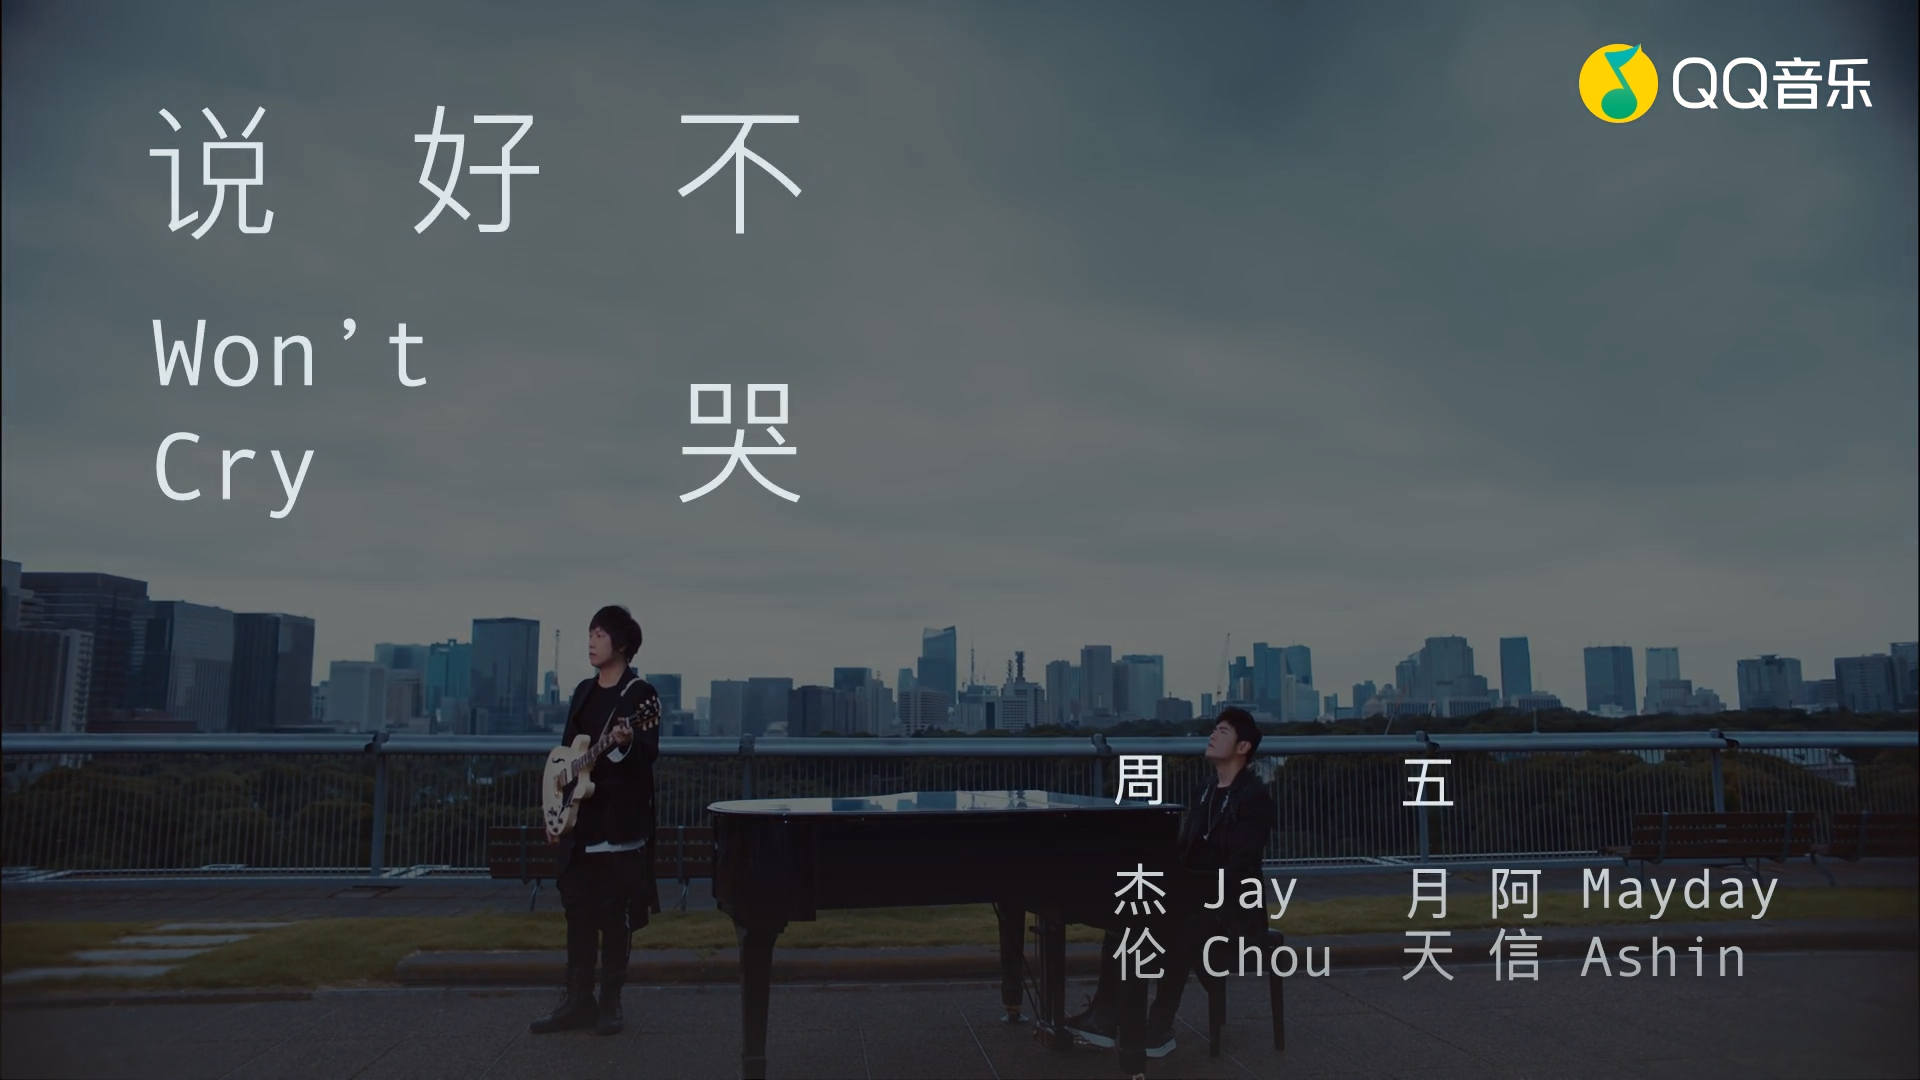 氪星晚报 | 华为腾讯签署5G合作；《说好不哭》创QQ音乐销售记录；vivo推出支付产品